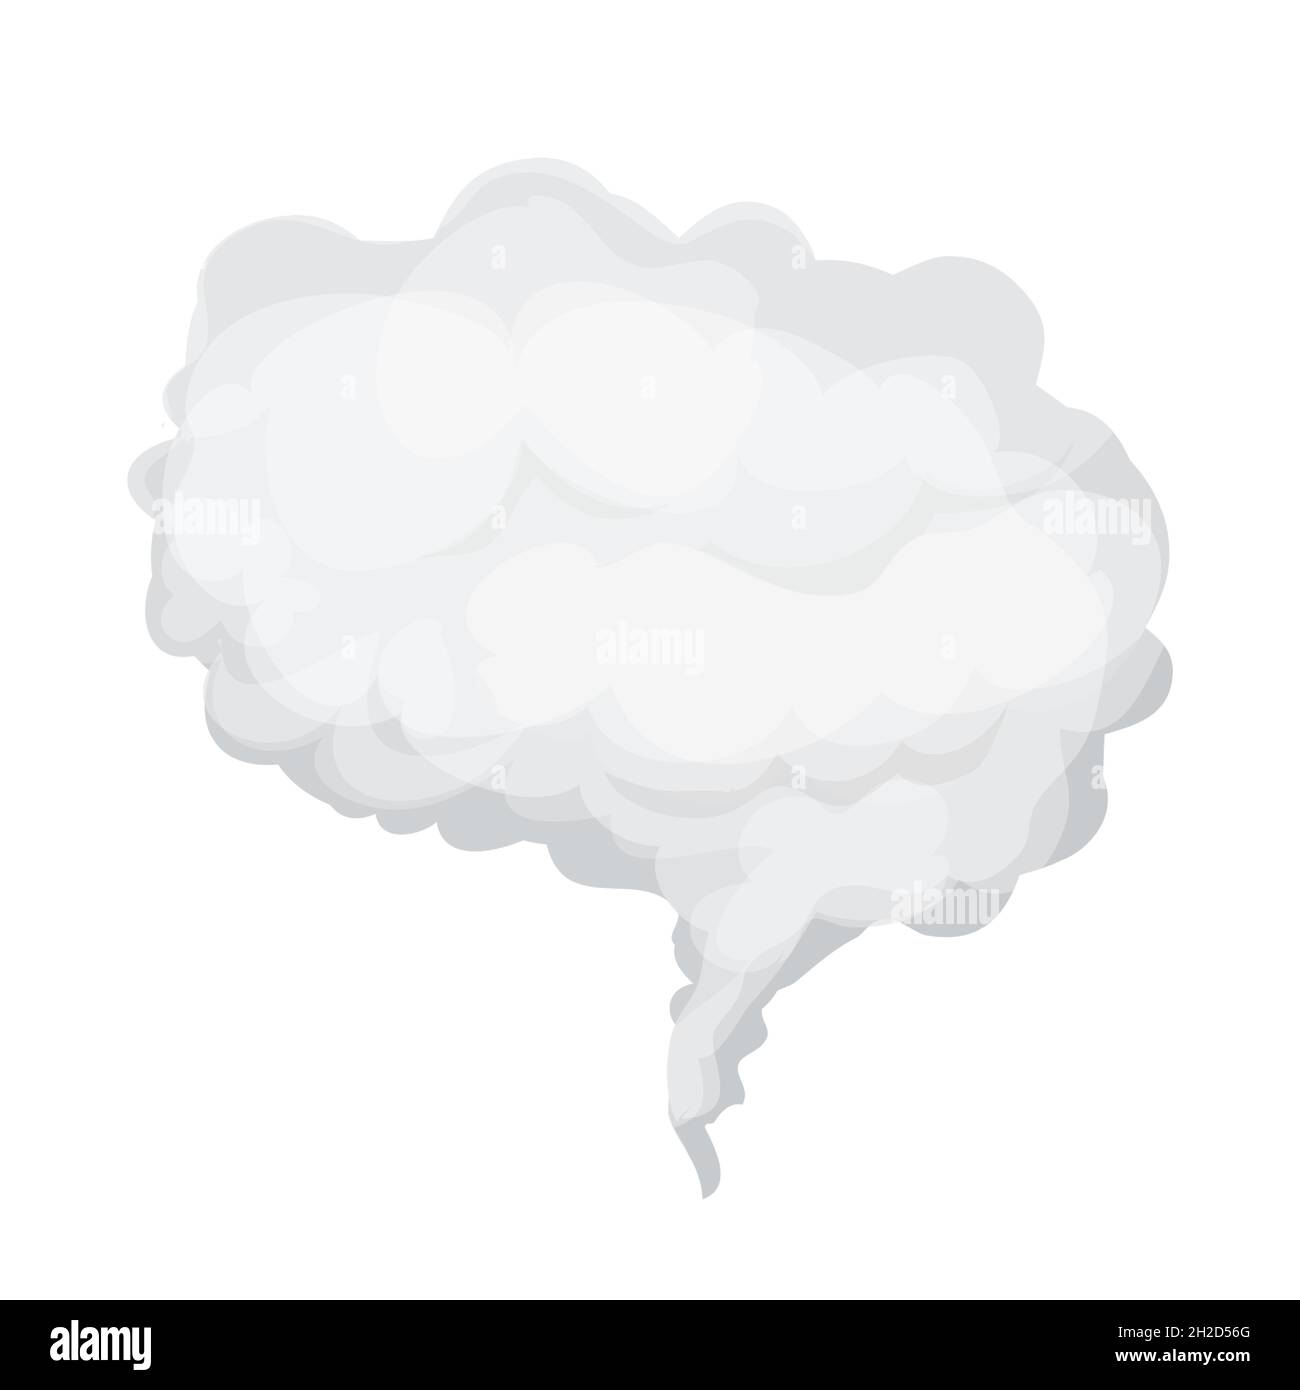 Nube gris, humo o niebla en estilo de dibujos animados aislados sobre fondo blanco. Elemento meteorológico, burbuja esponjosa. Ilustración vectorial Ilustración del Vector